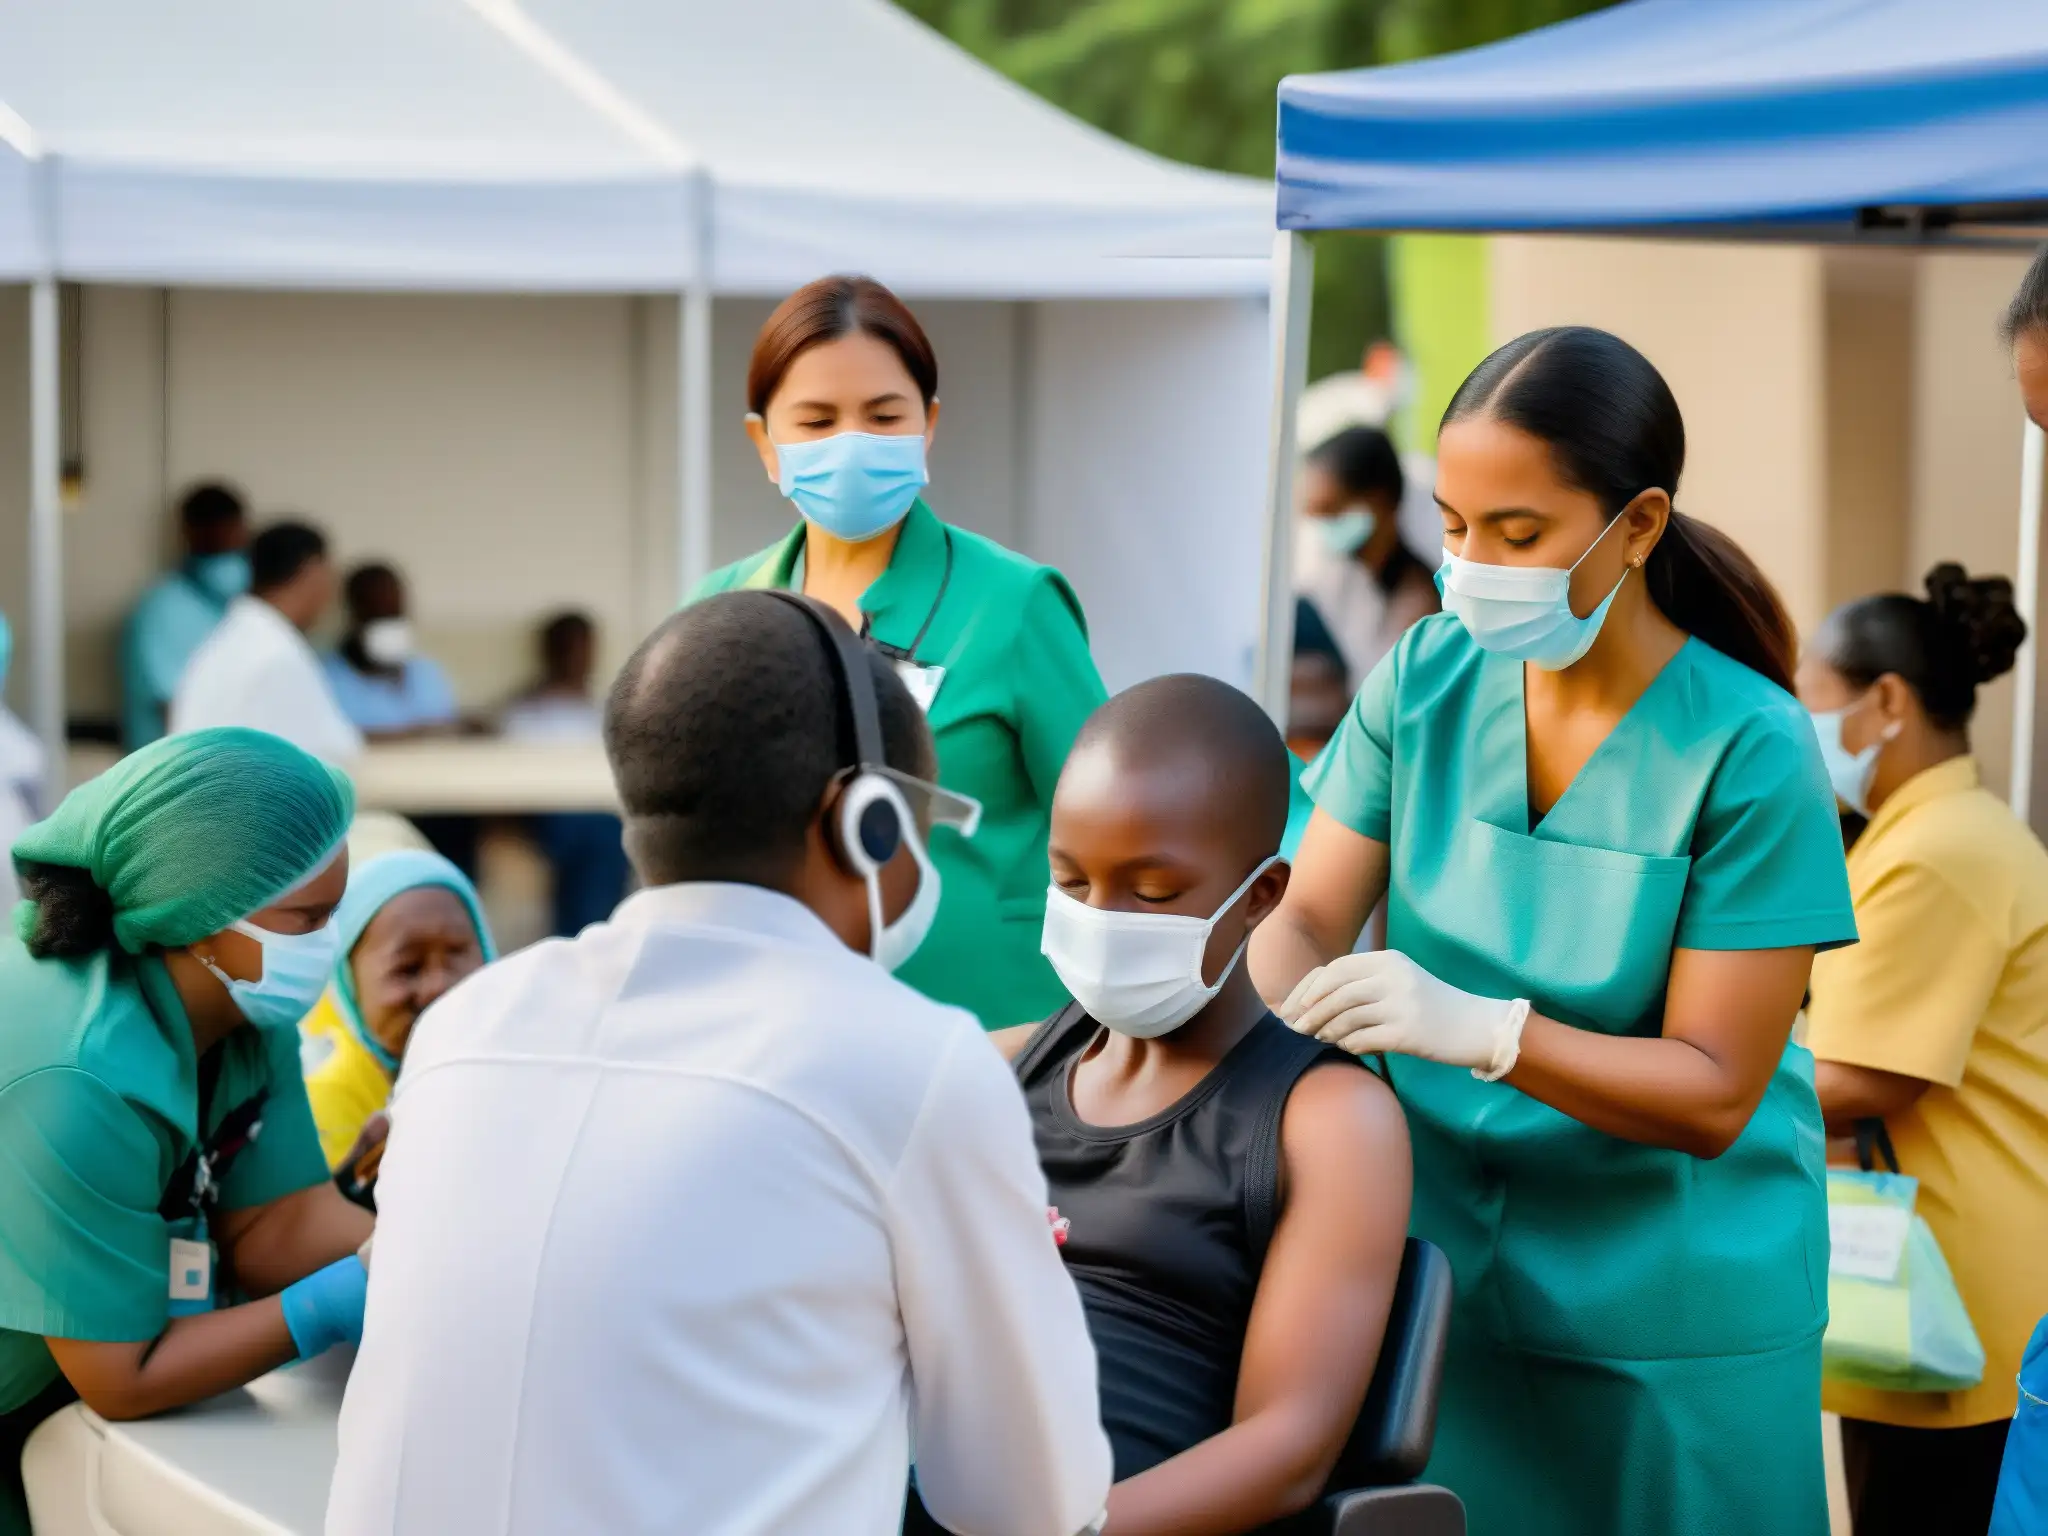 Un grupo diverso recibe vacunas en una clínica móvil de salud pública en una bulliciosa calle de la ciudad, desmintiendo mitos urbanos